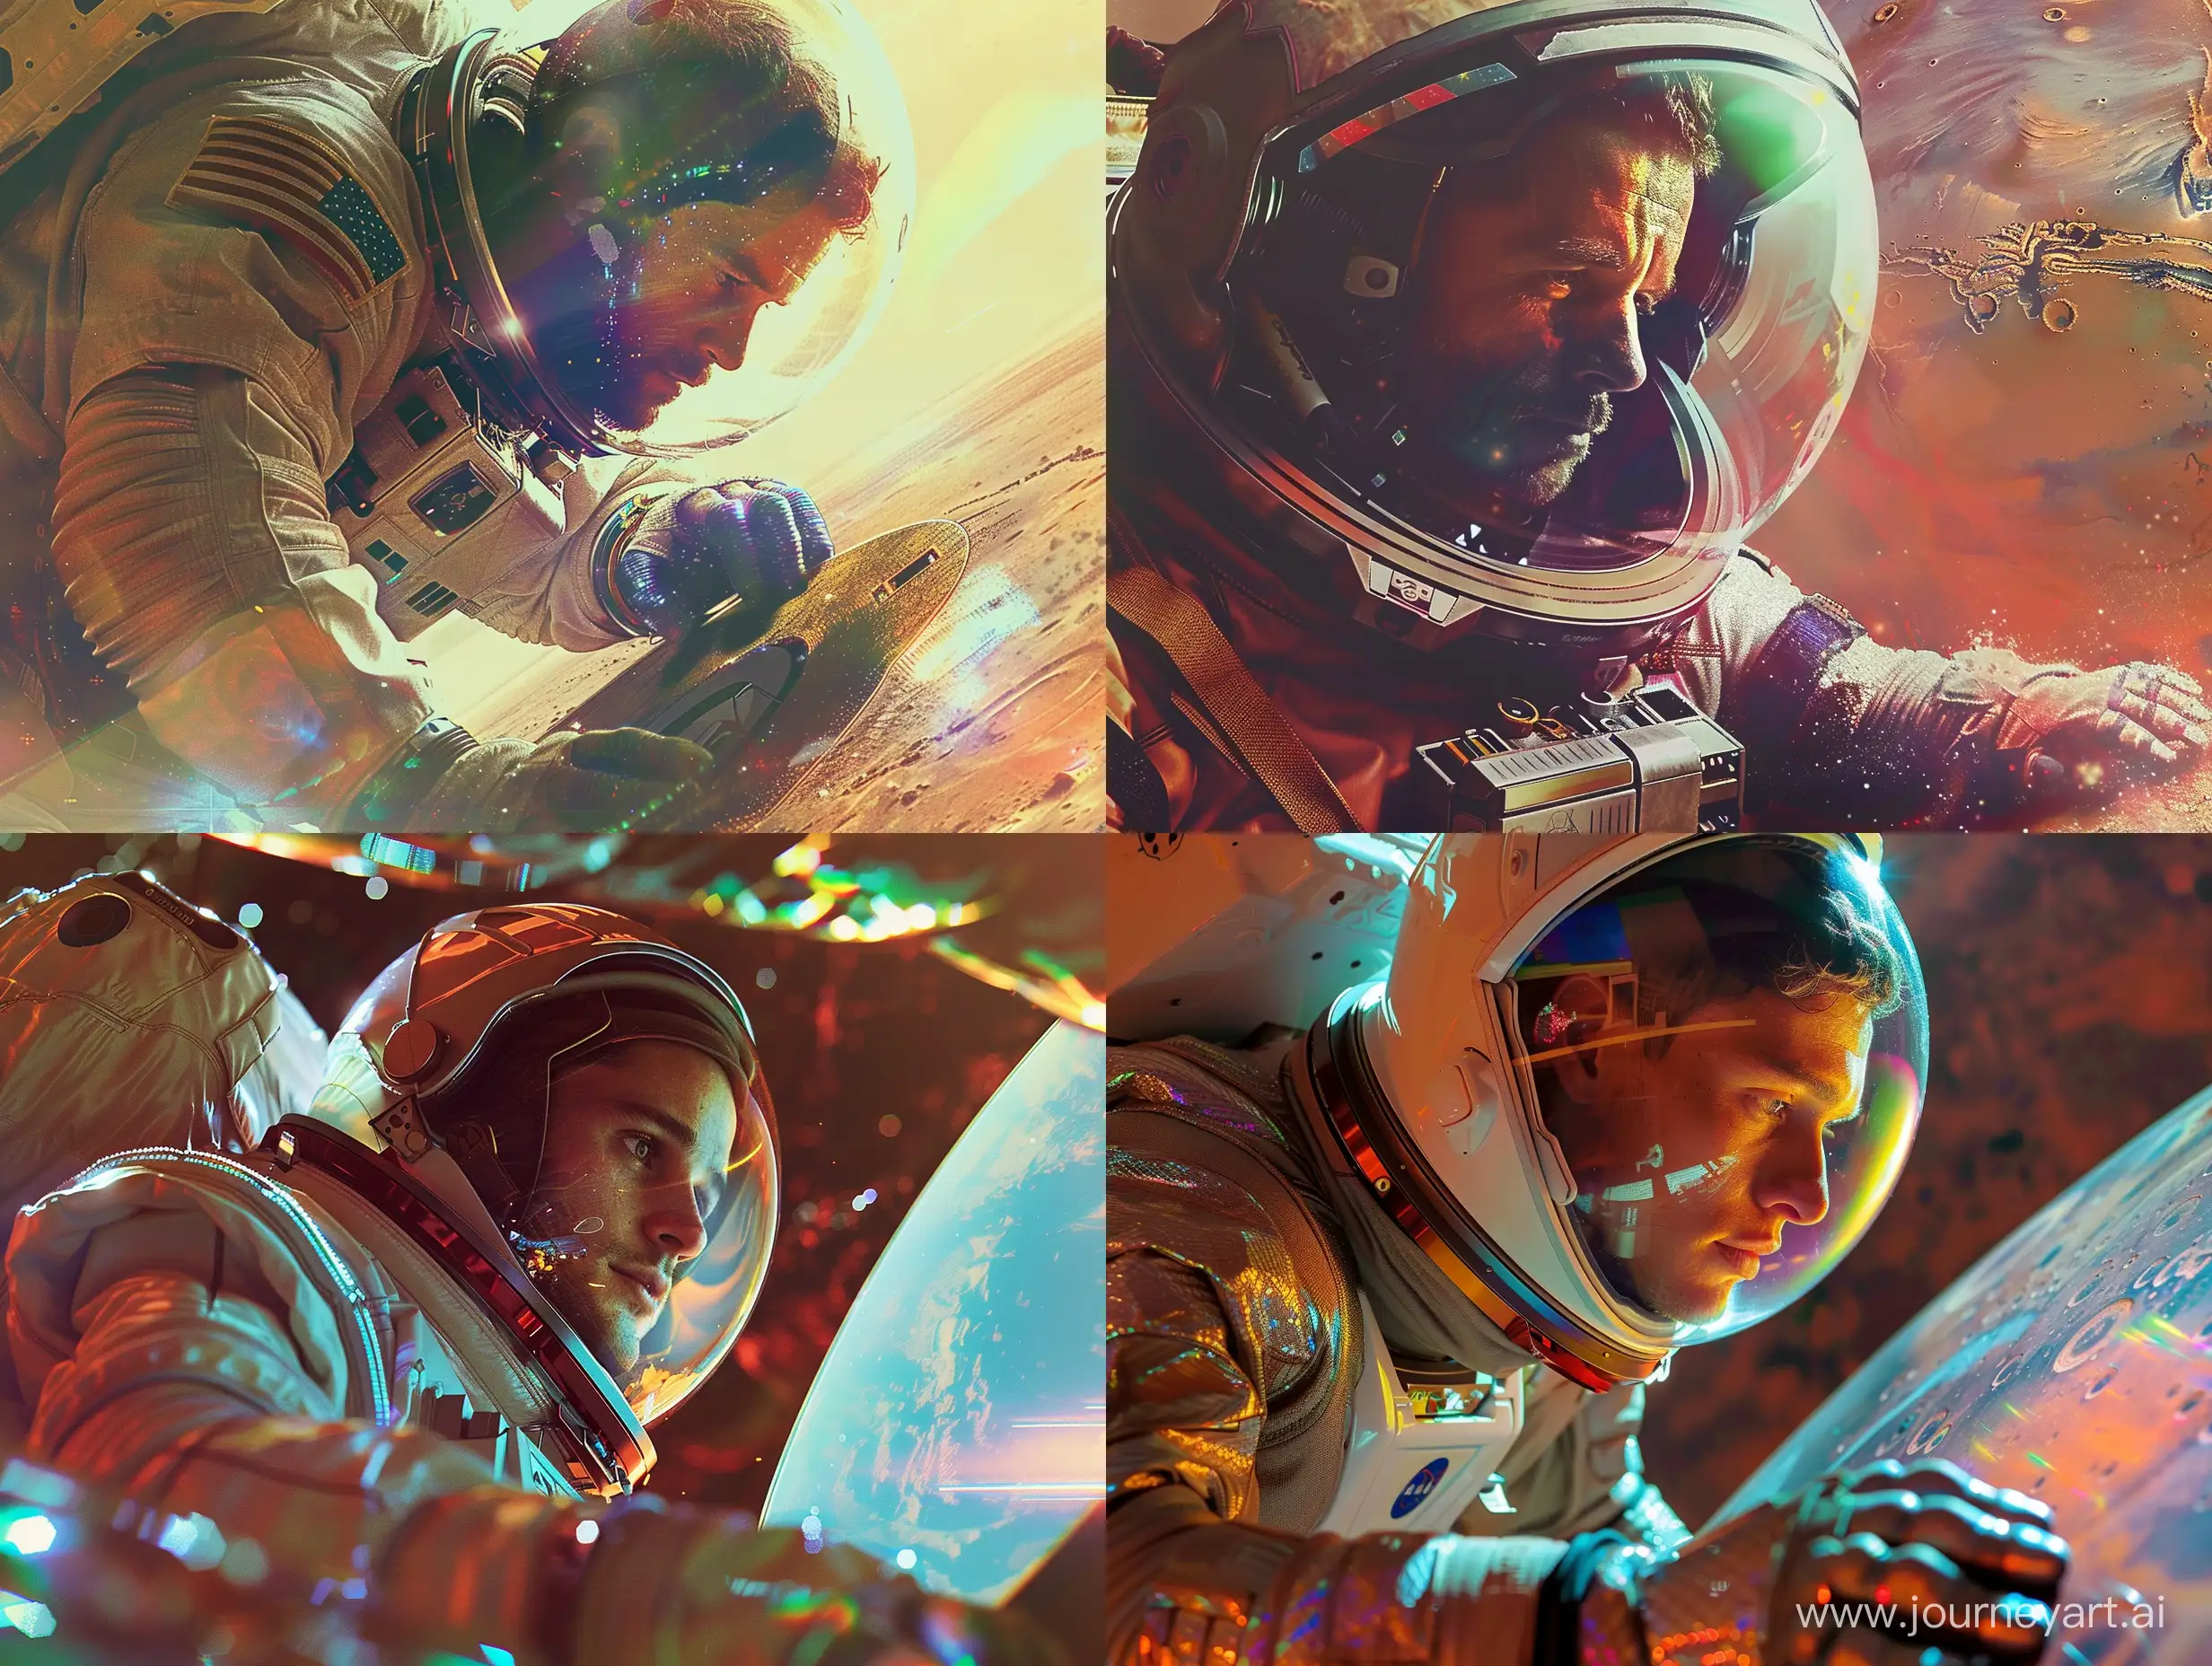 мужчина в костюме космонавта без скафандра смотрит в экран сидя на диске марса, красивые цвета и блики, его лицо видно близко и отчетливо